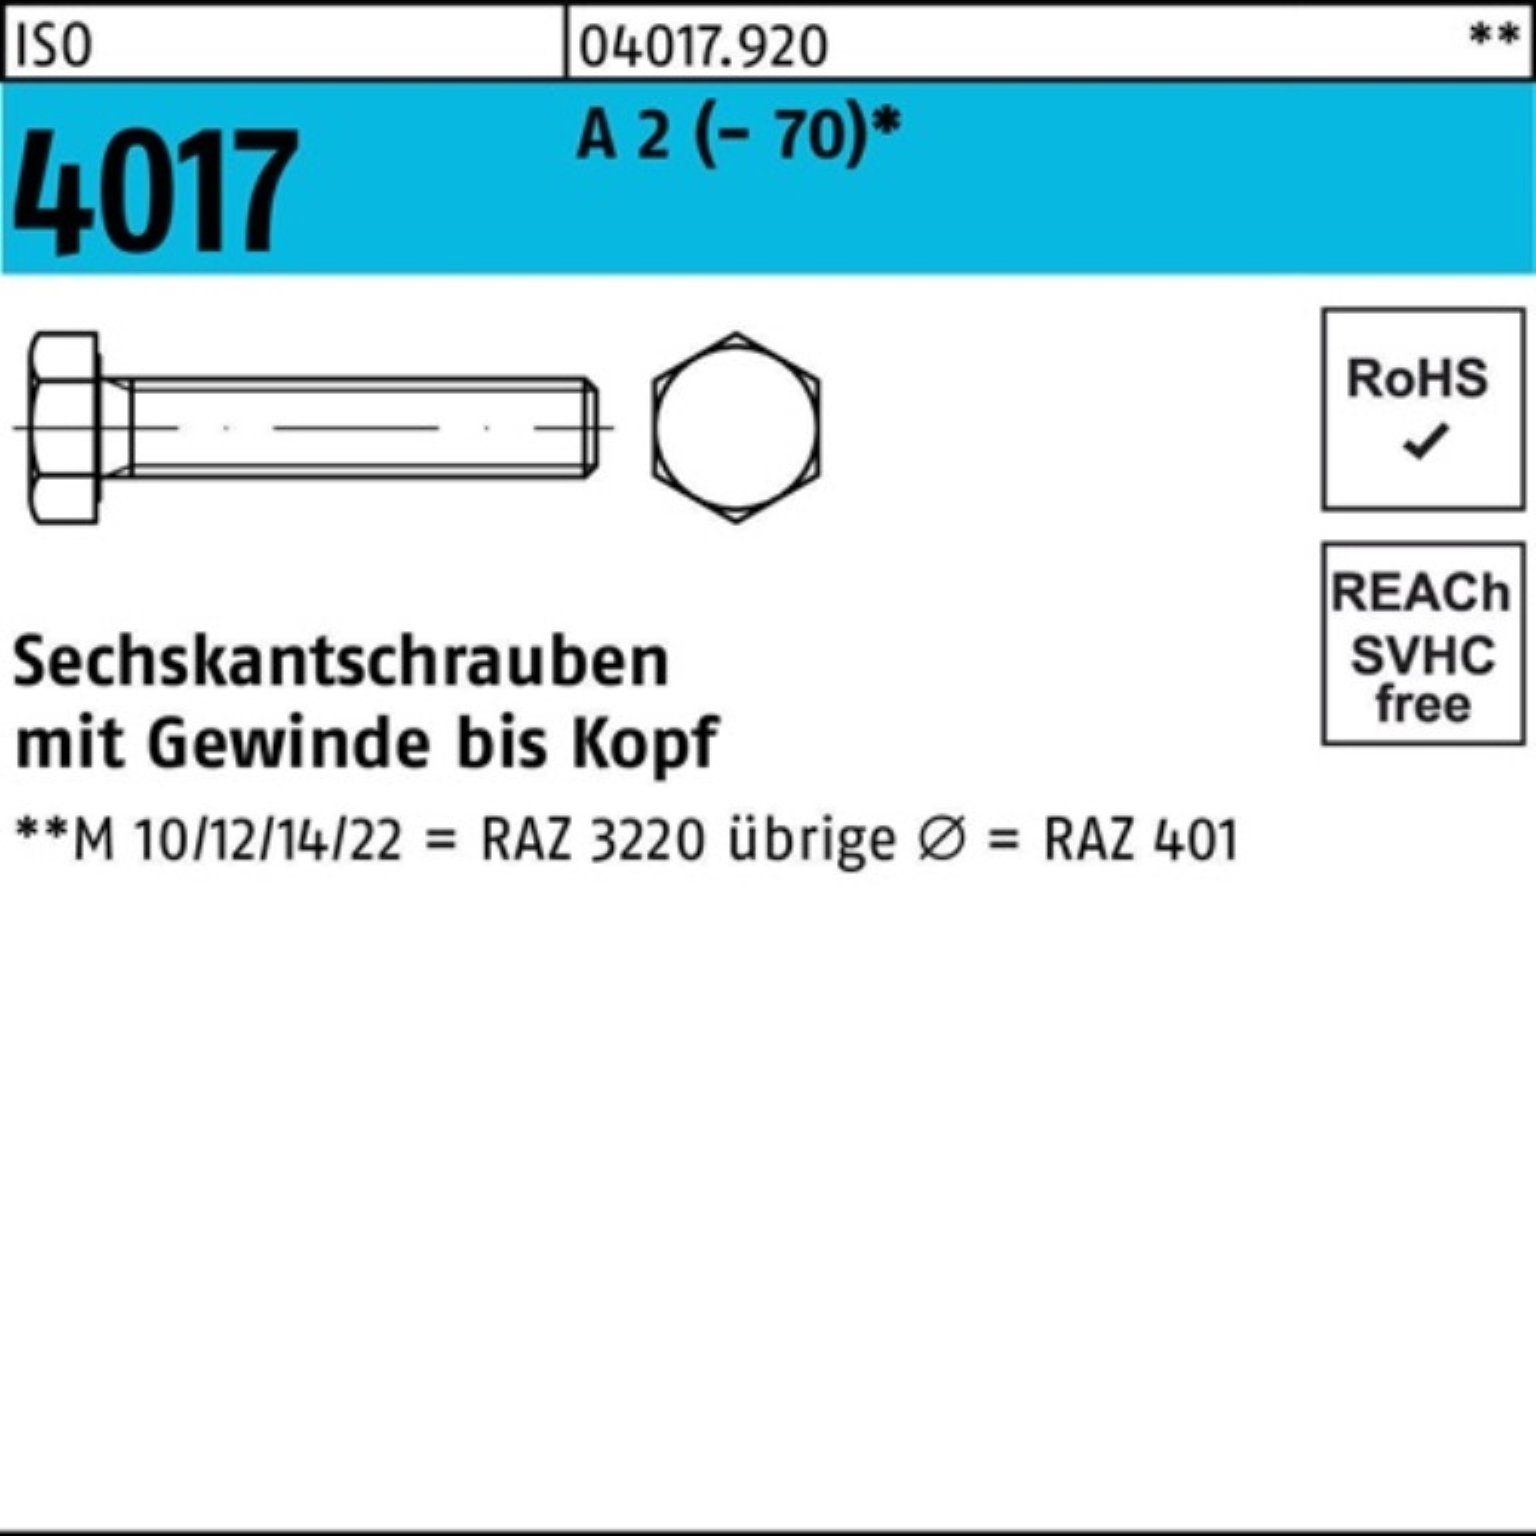 Bufab Sechskantschraube 100er Pack Sechskantschraube ISO 4017 VG M20x 35 A 2 (70) 25 Stück